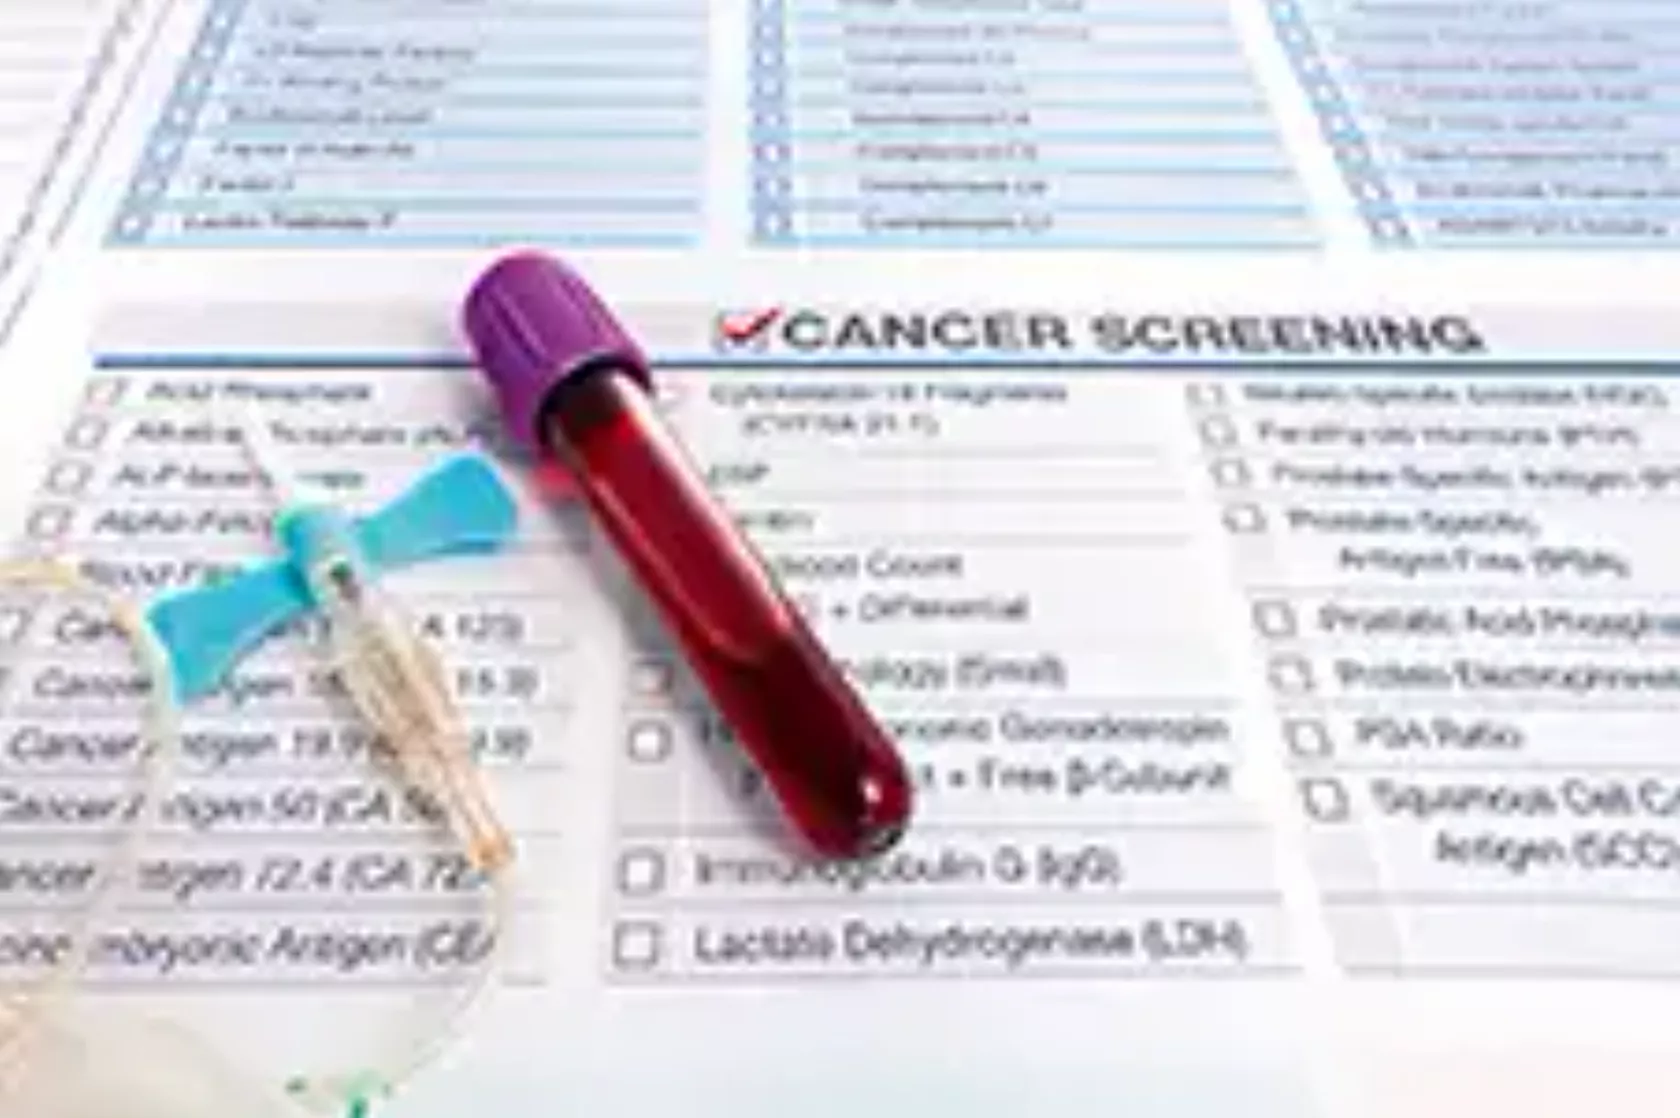 Blutprobe und Nadel für Zugang auf Laborauftrag für Screening.